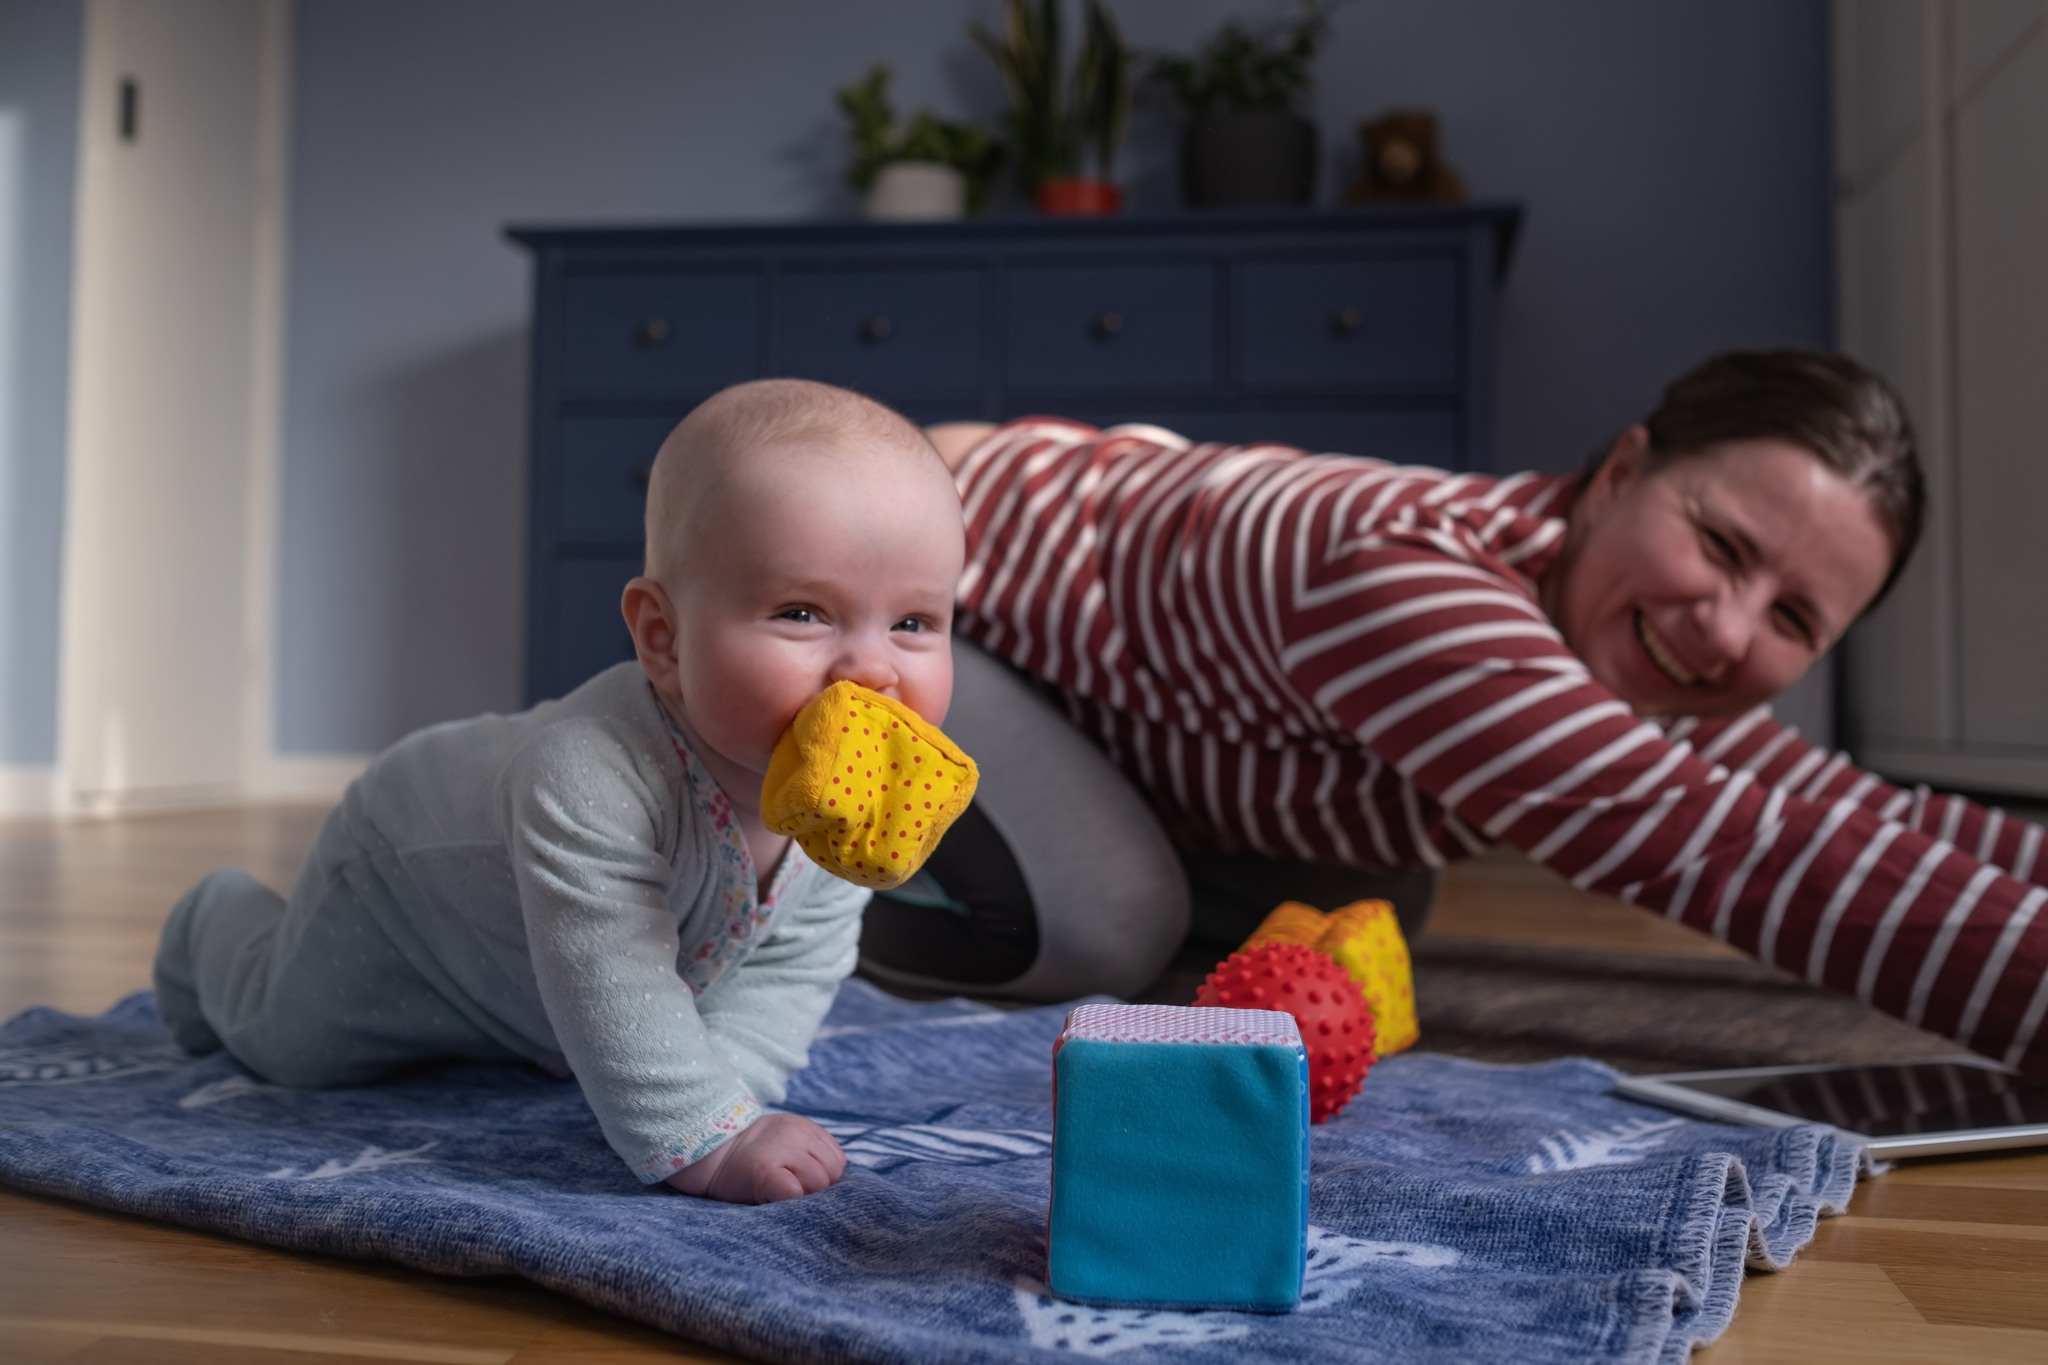 En kvinna gör en yogaövning på golvet tillsammans med ett litet barn. Bebisen som har en mjuk leksak i munnen tittar in i kameran med busig blick.